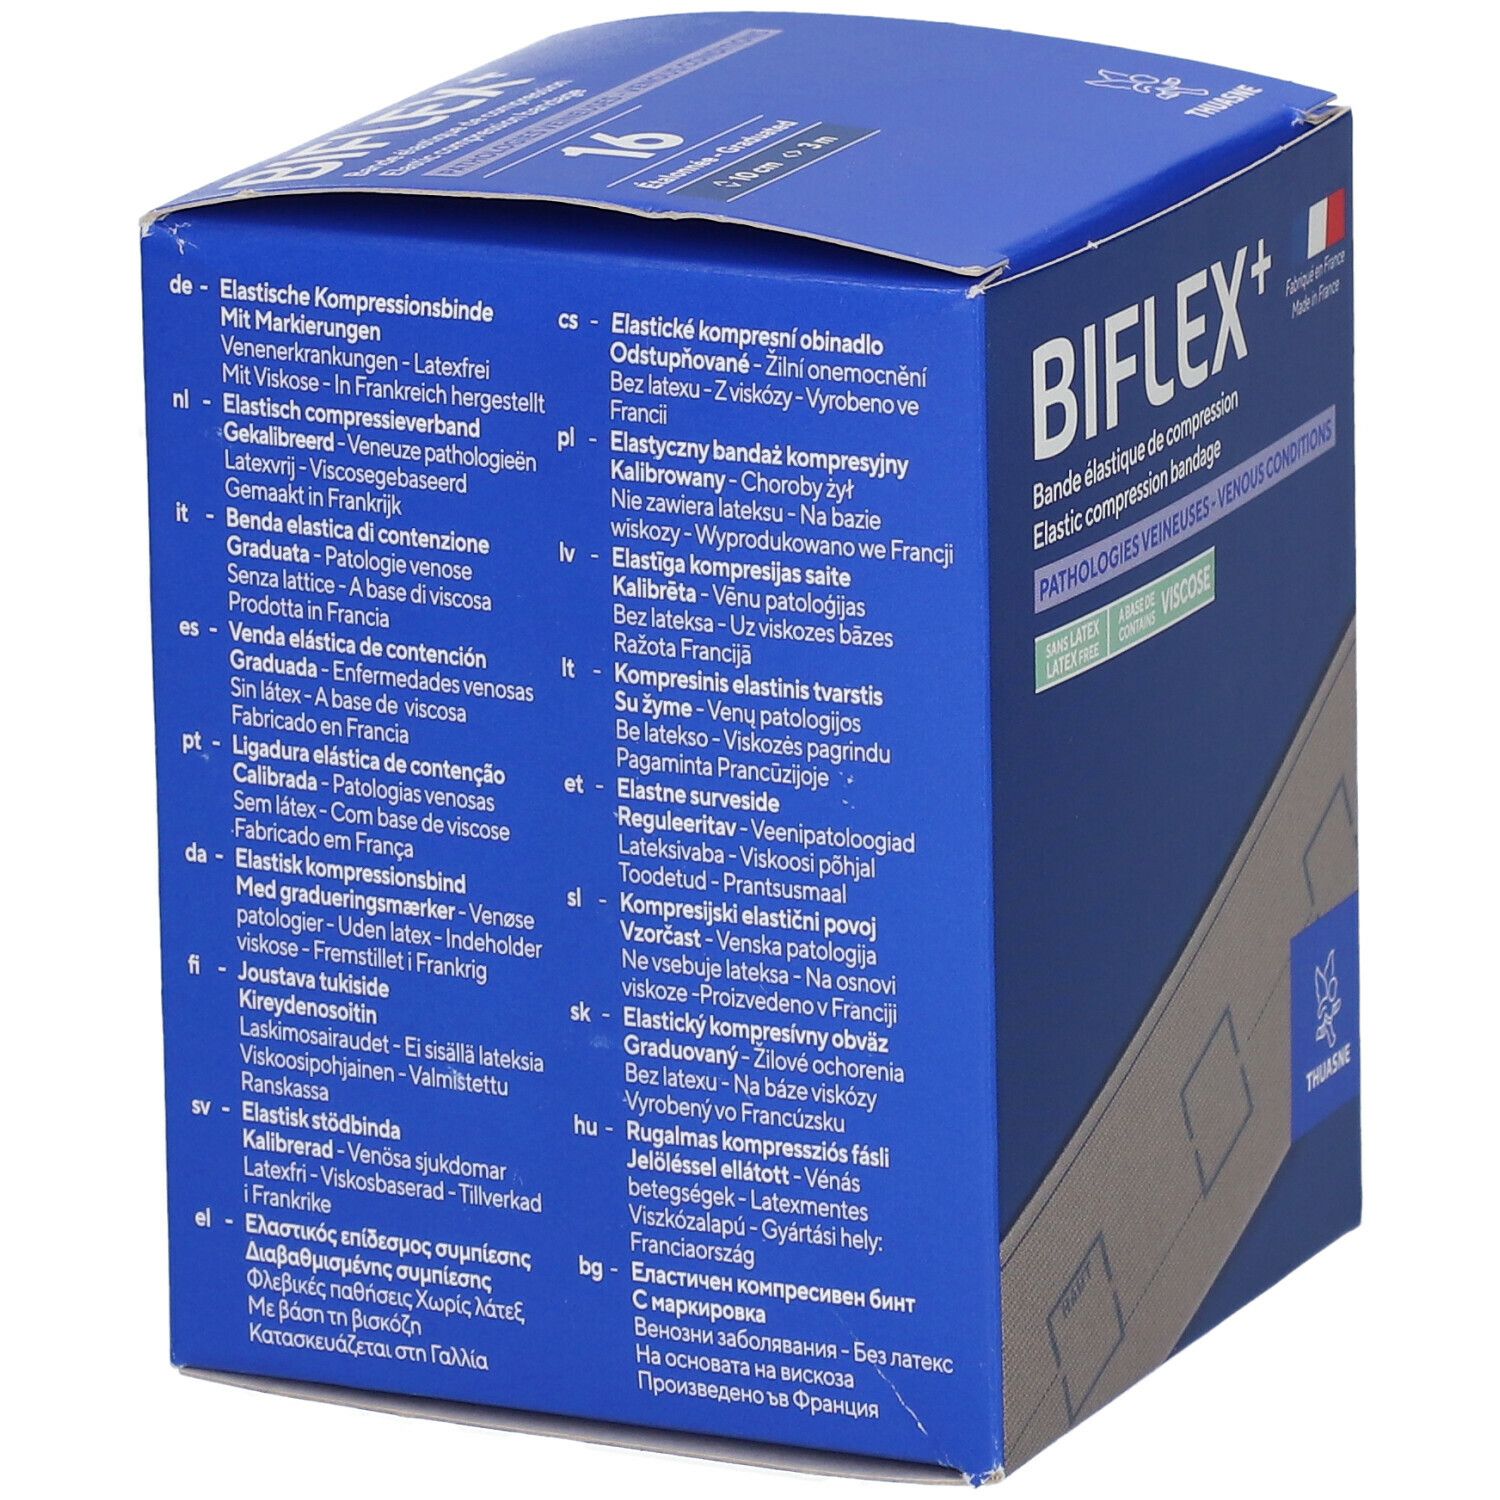 Biflex® 16+ Medium Stretch + Indic. Beige 10 cm x 3 m